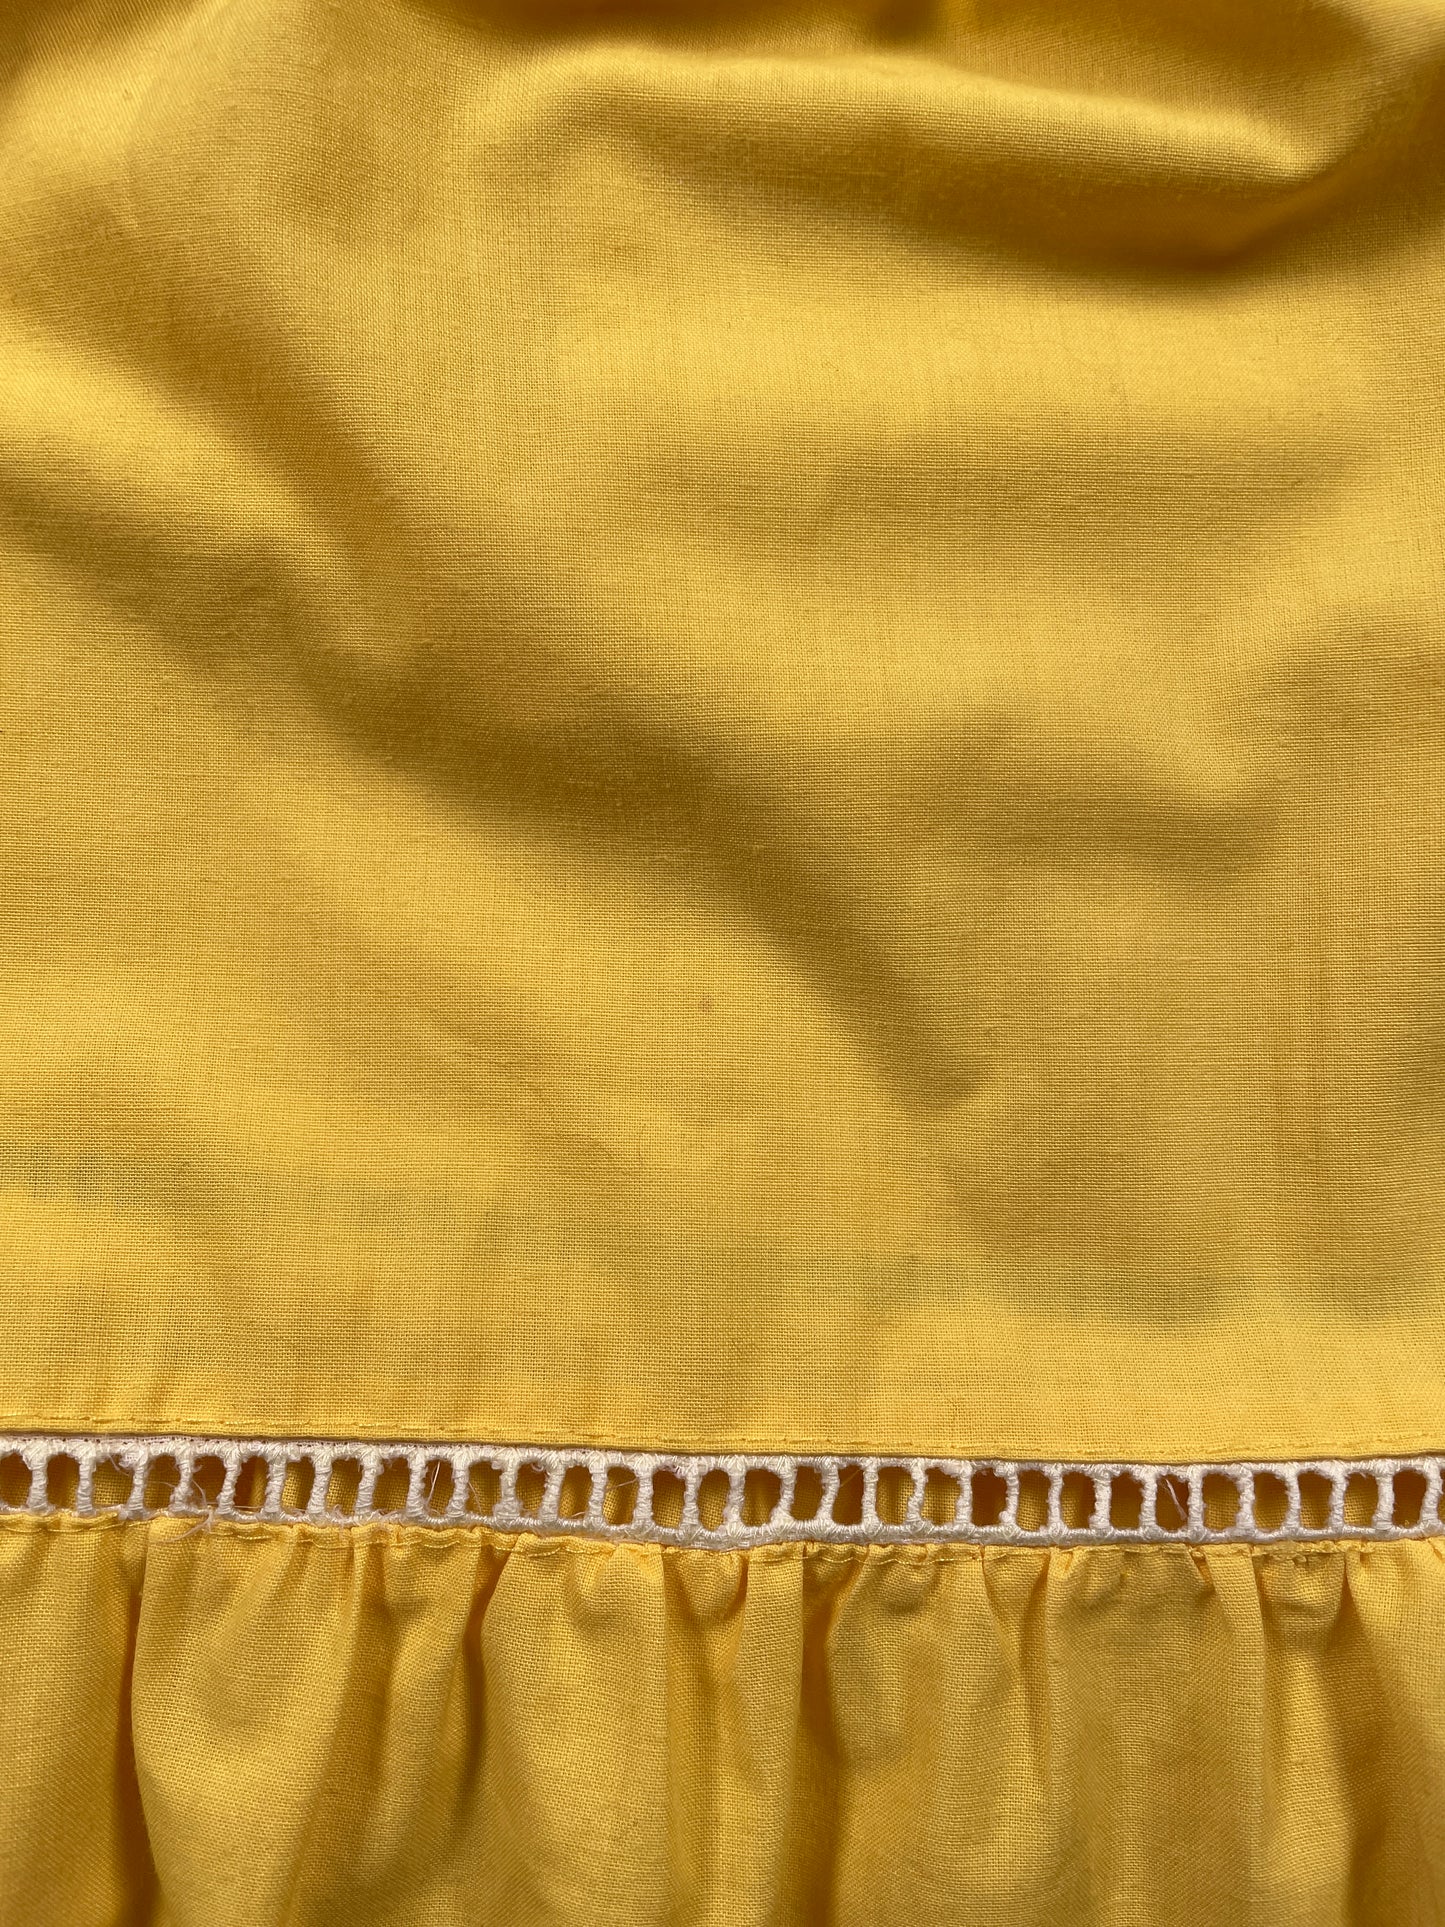 Robe soleil vintage jaune faite en France